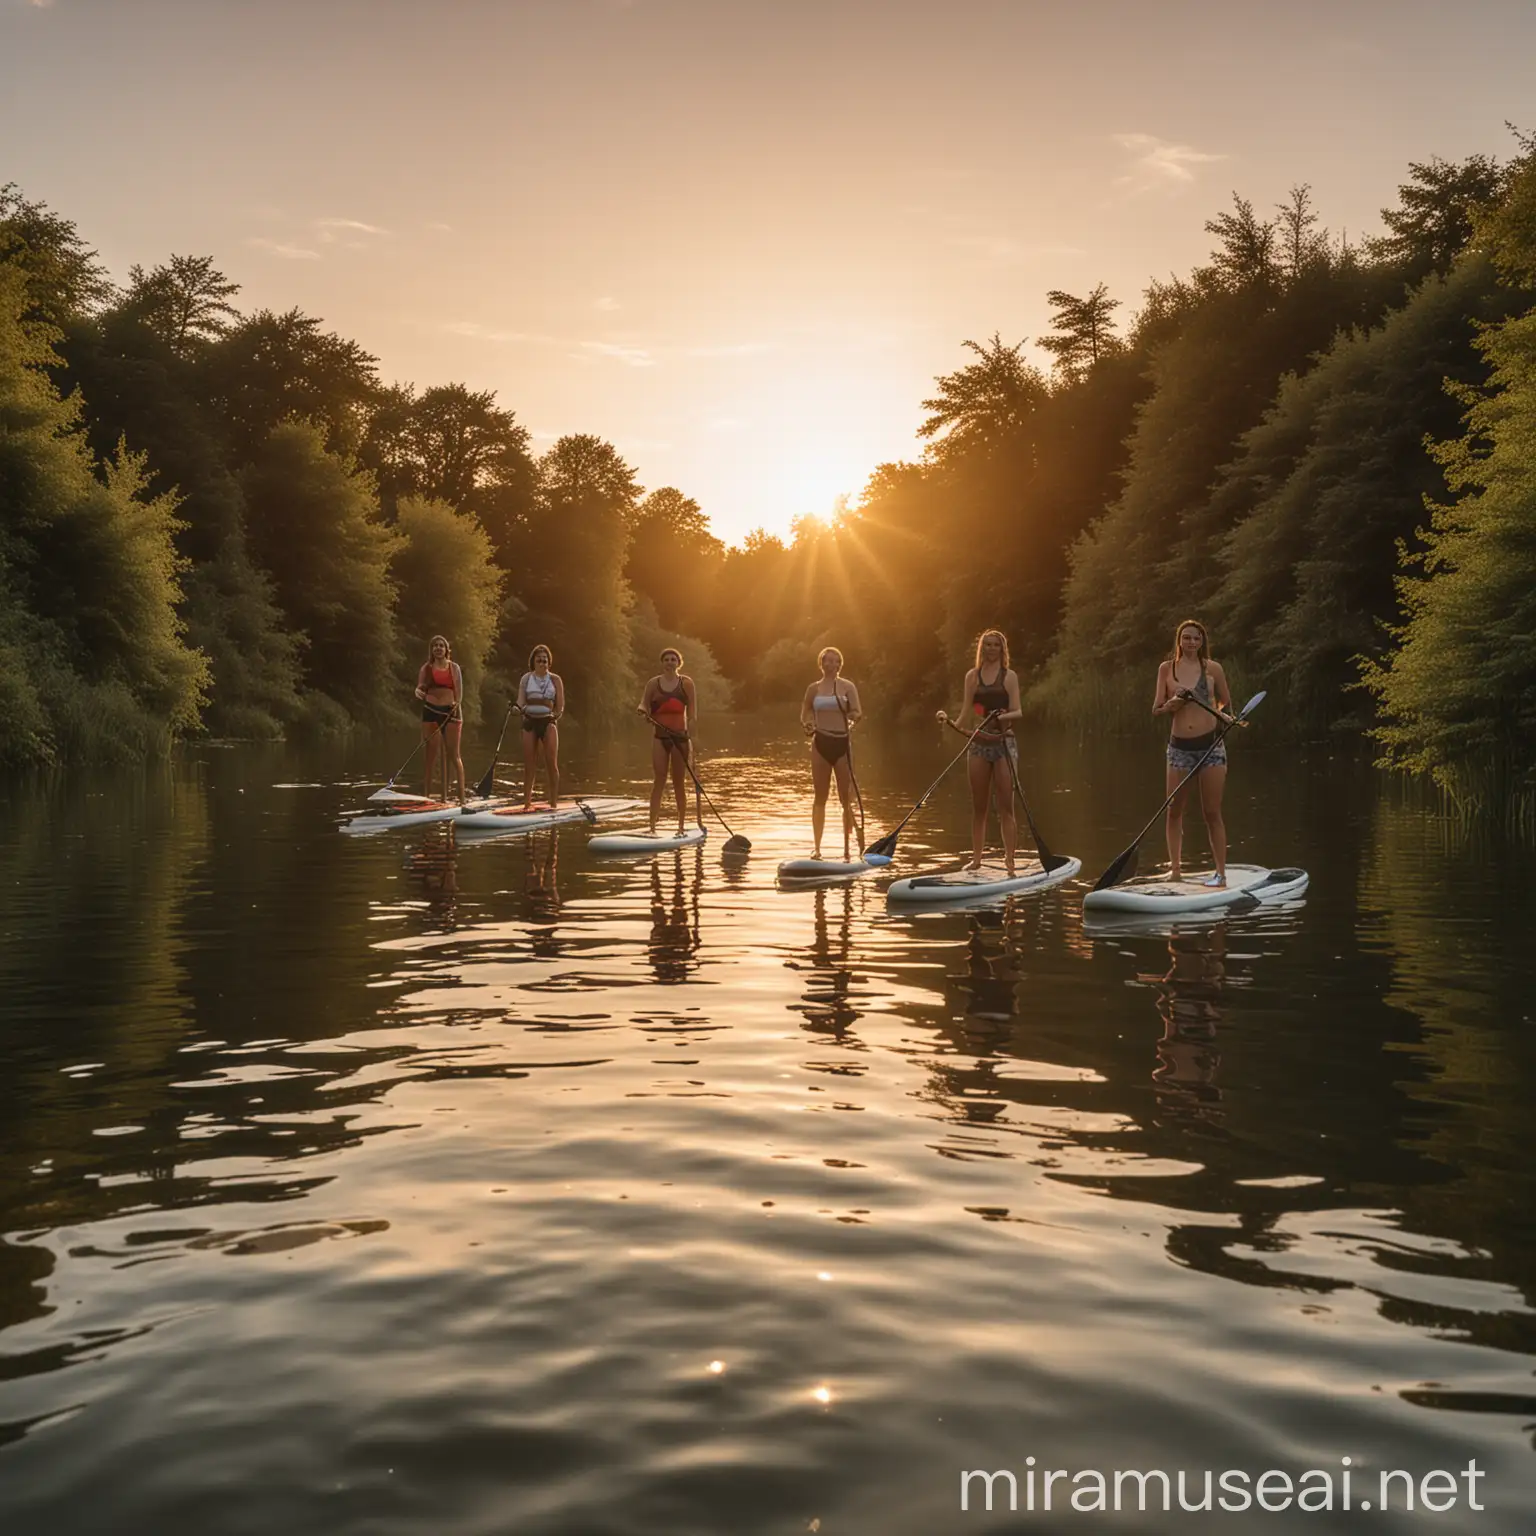 Serene Sunset Paddleboarding Scene with Four People on UK Lake